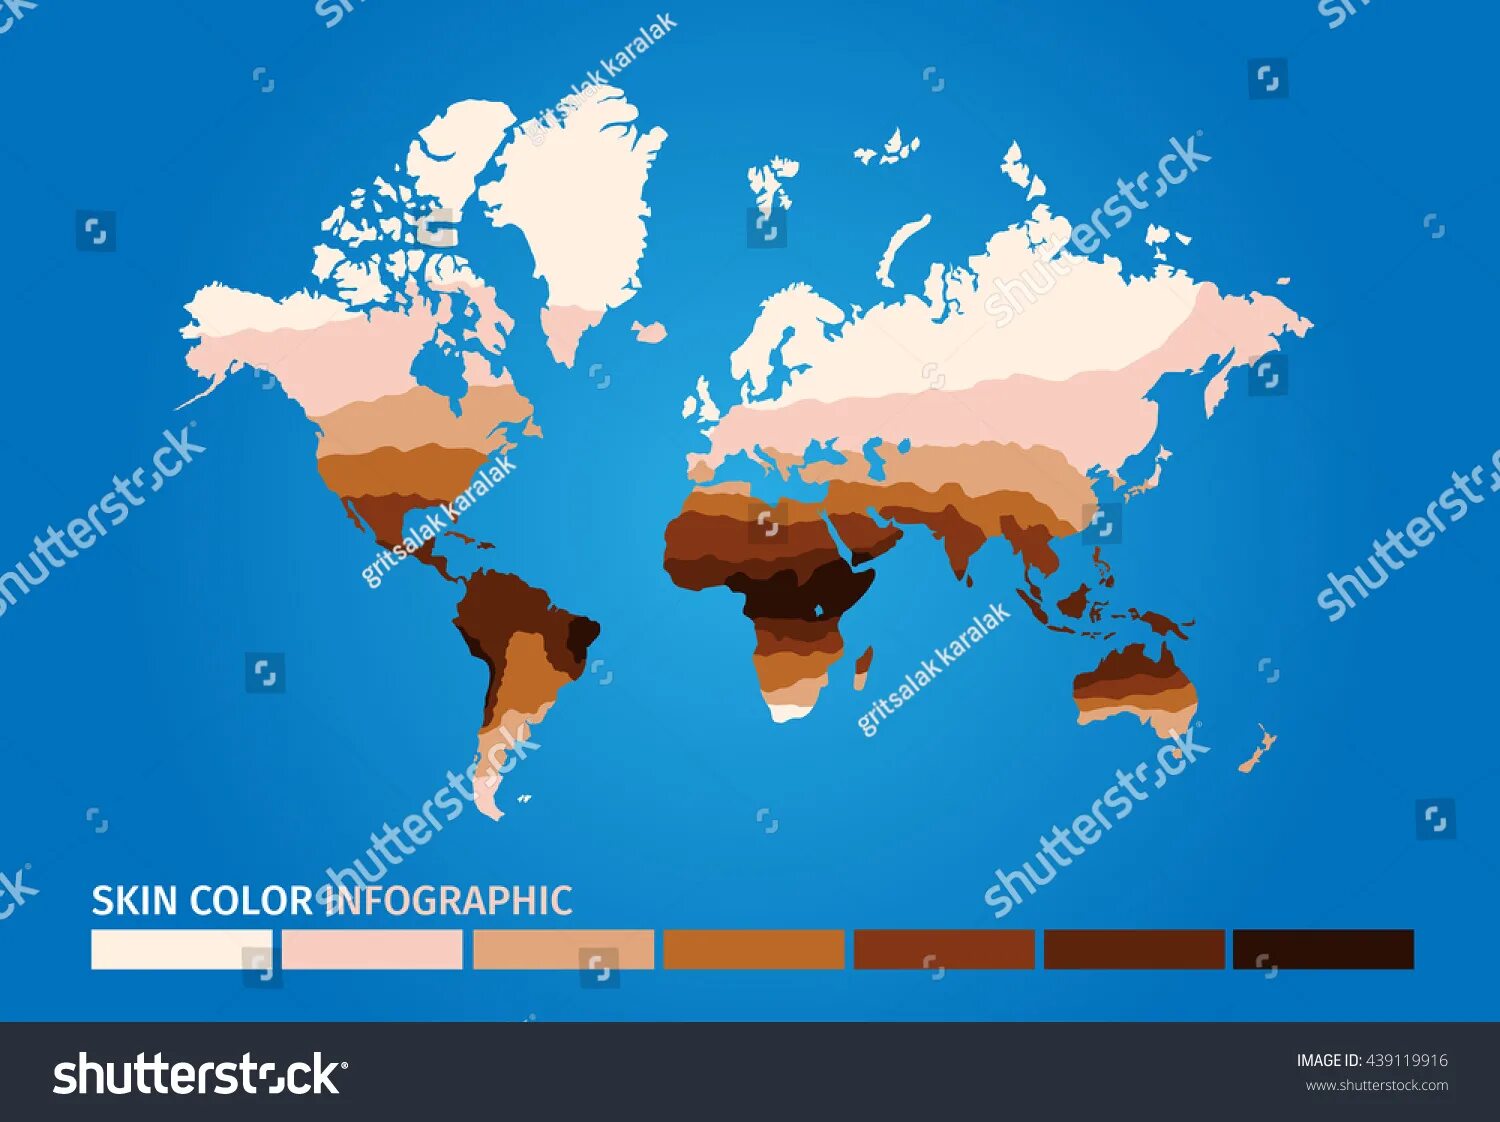 Кожевенное на карте. Карта распределения цвета кожи. Распределение людей по цвету кожи. Карта цвета кожи в мире.